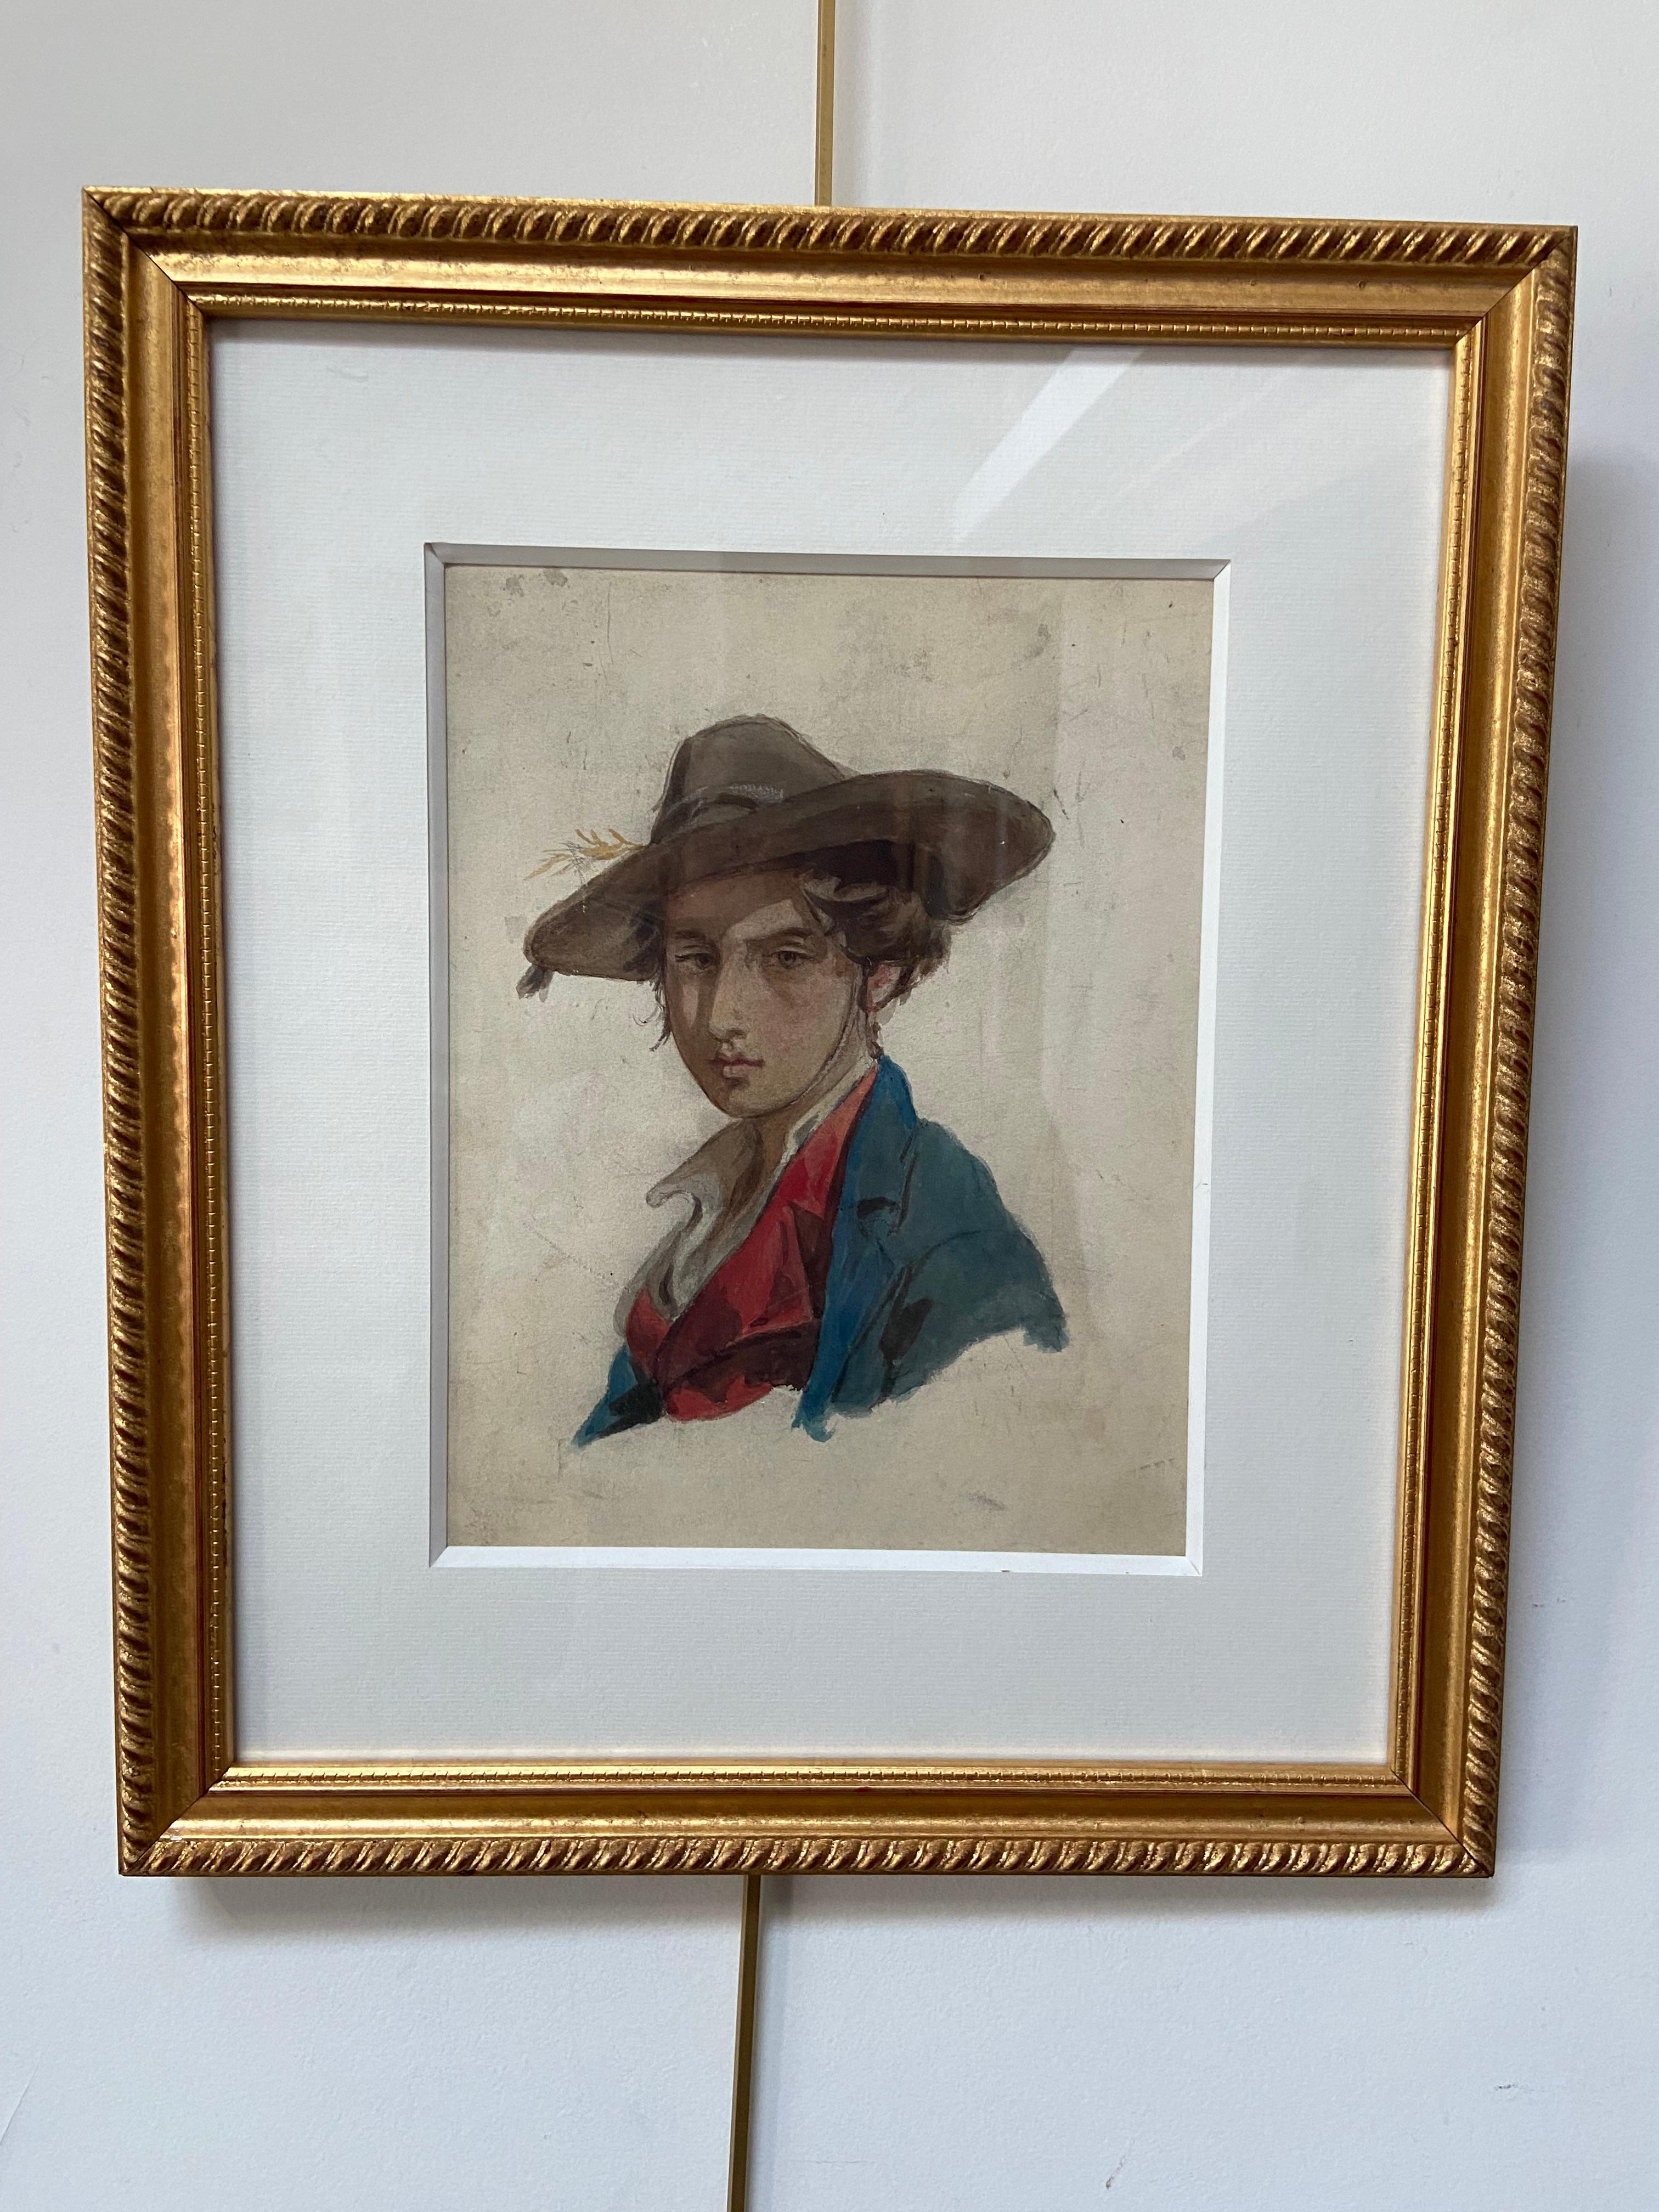 Zuschreibung an Isidore Pils (1813-1875)
Porträt eines jungen Mannes
Aquarell auf Papier, montiert auf Karton
26.5 x 21 cm
In einem modernen Rahmen: 42 x 36 cm
In recht gutem Zustand, etwas verstaubt, einige Kratzer: einer links am Hut (siehe Bild)